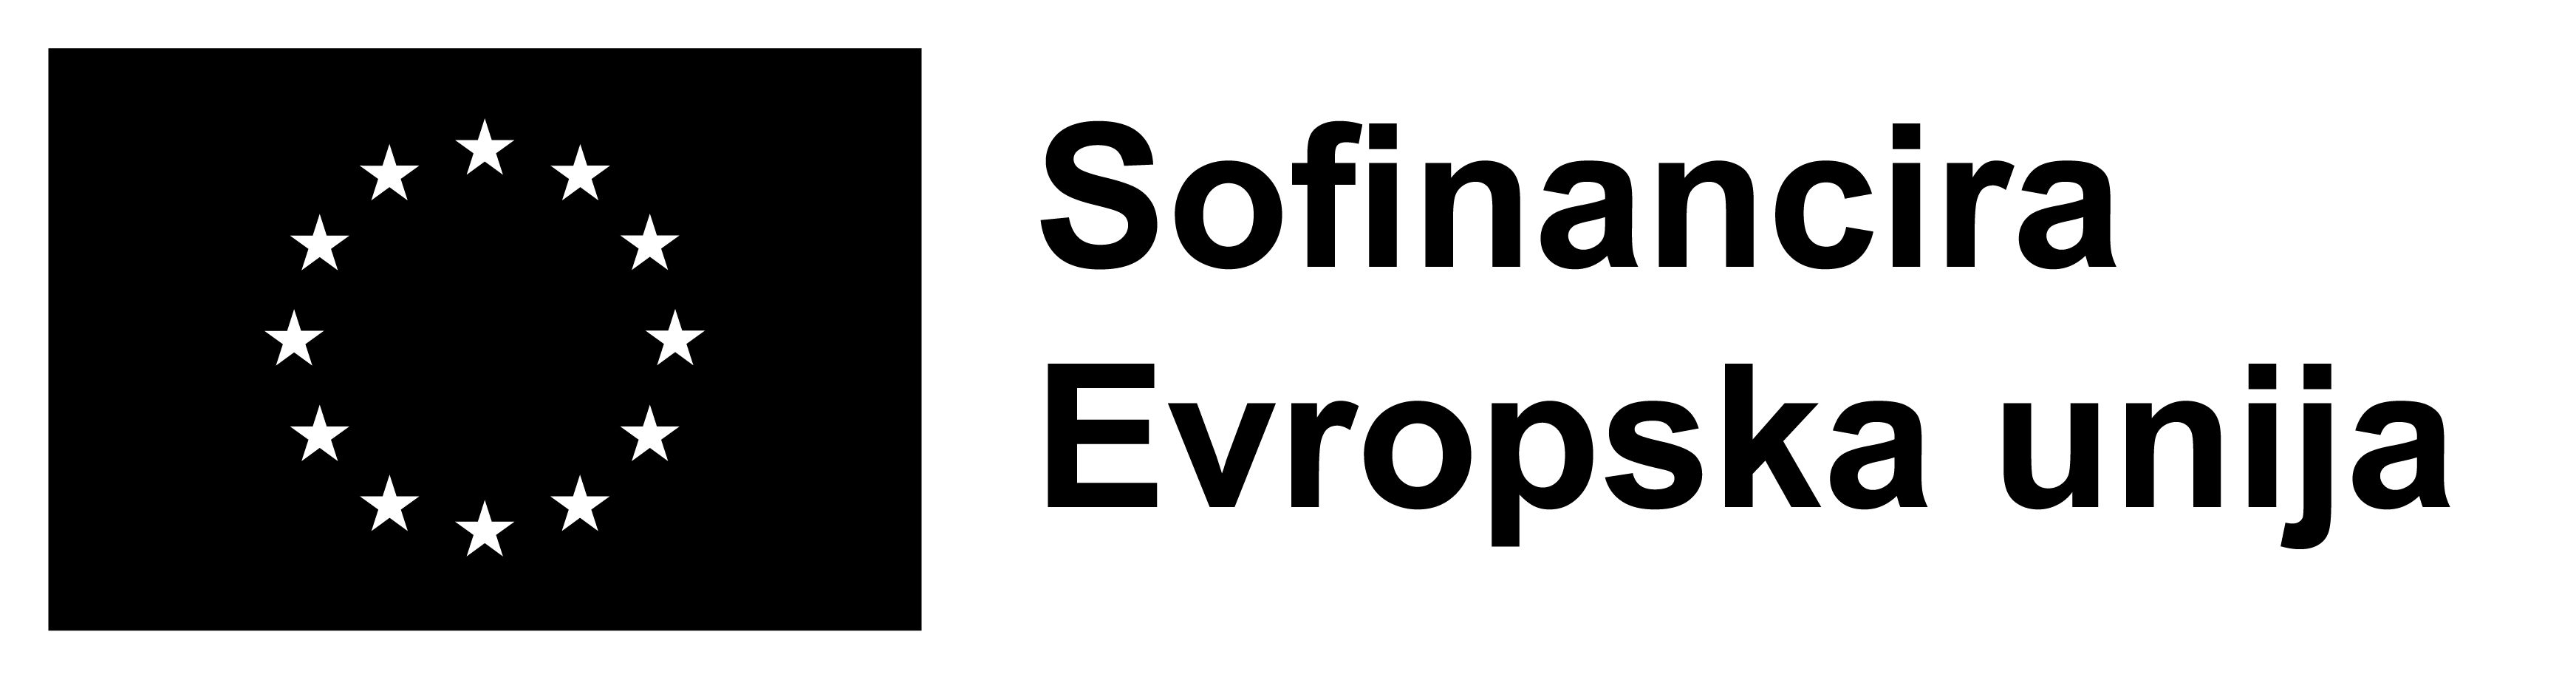 Logotip Sofinancira EU